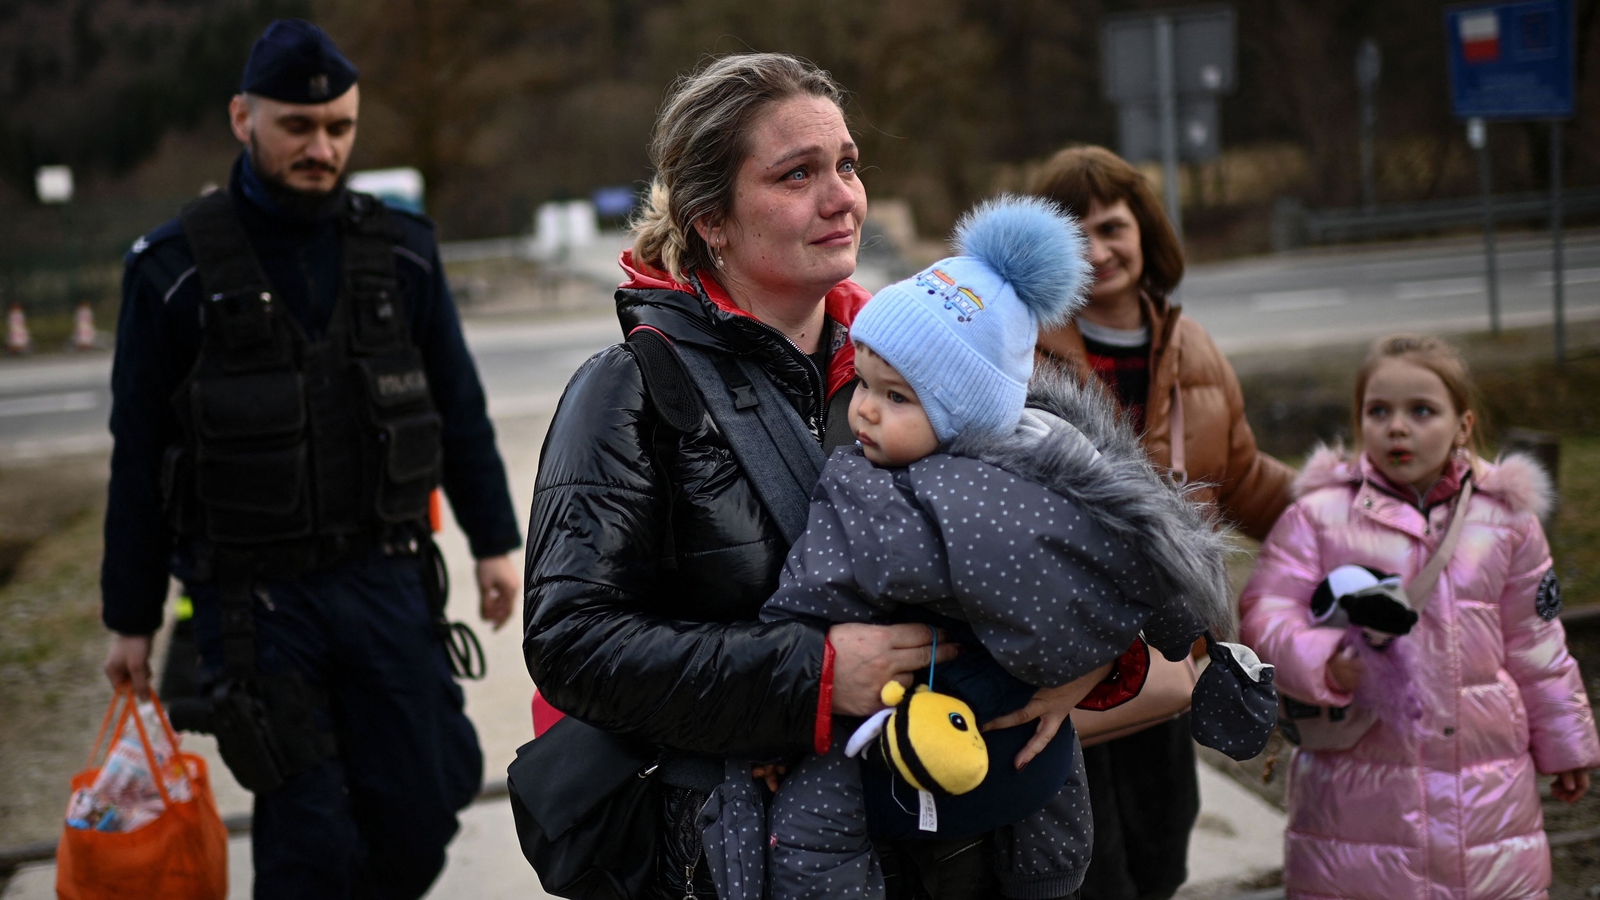 Poland calls for more EU unity on refugee crisis